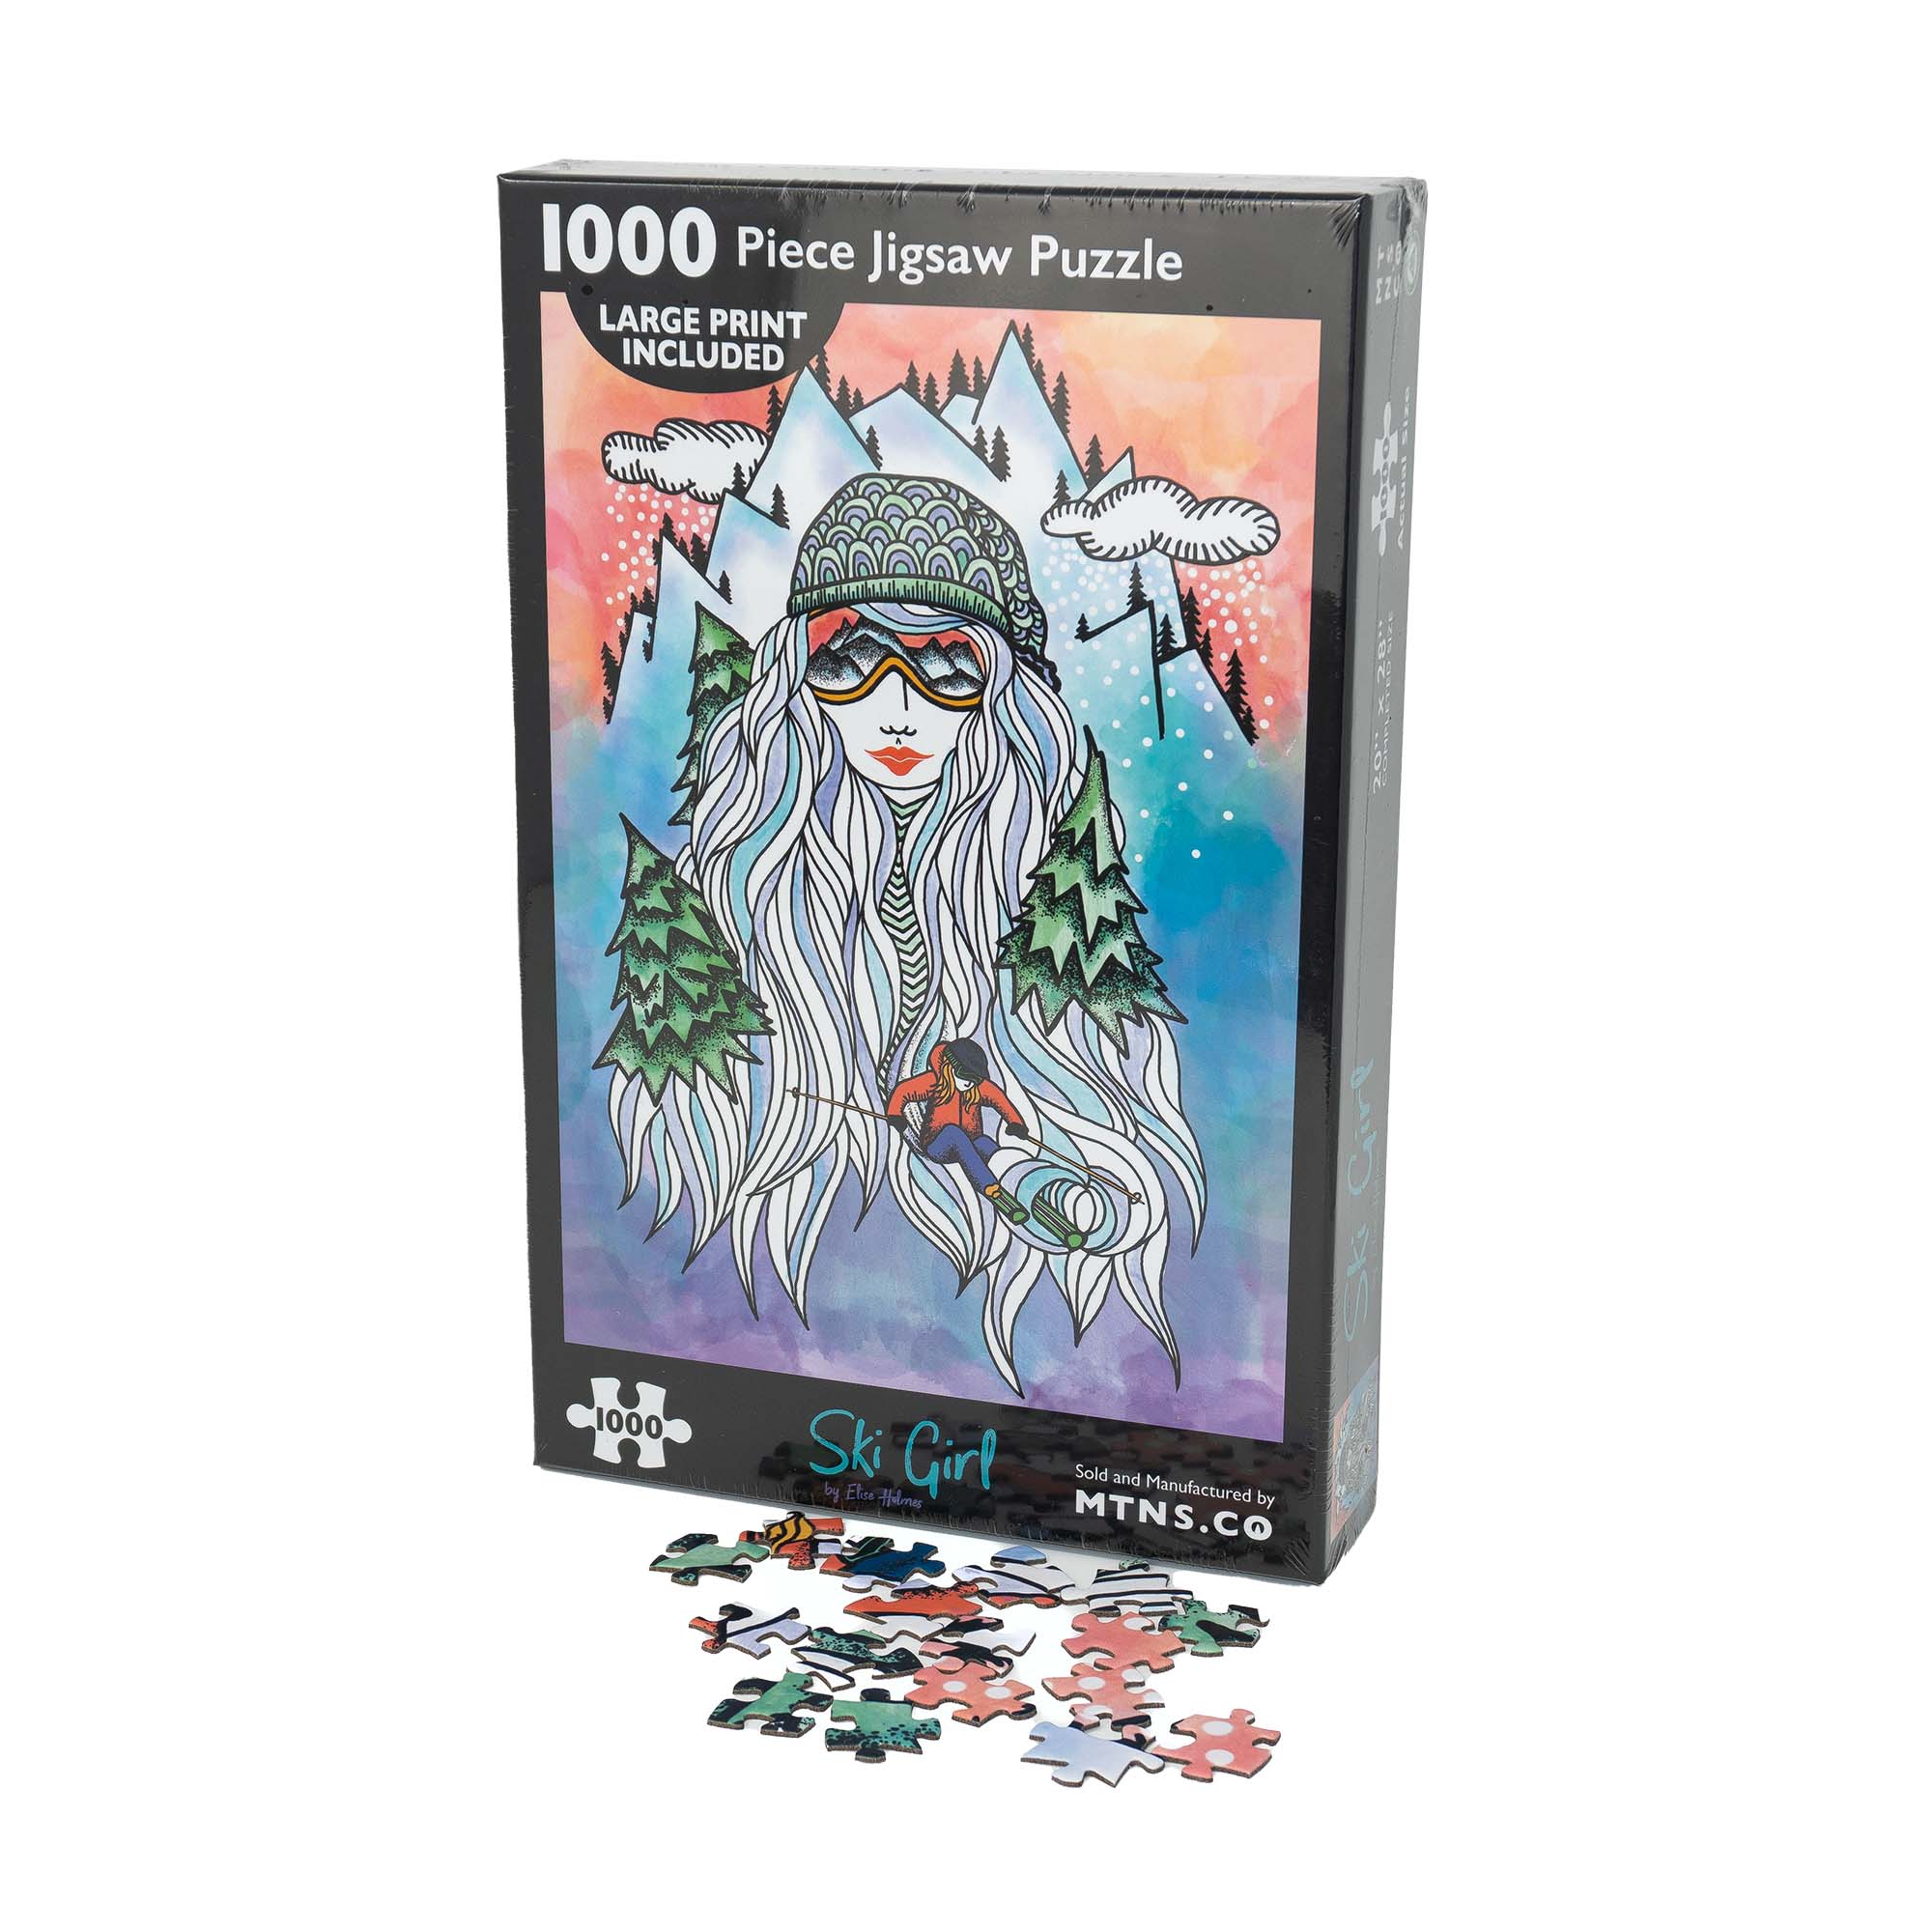 Ski Girl Jigsaw Puzzle | 1000 Piece Jigsaw Puzzle